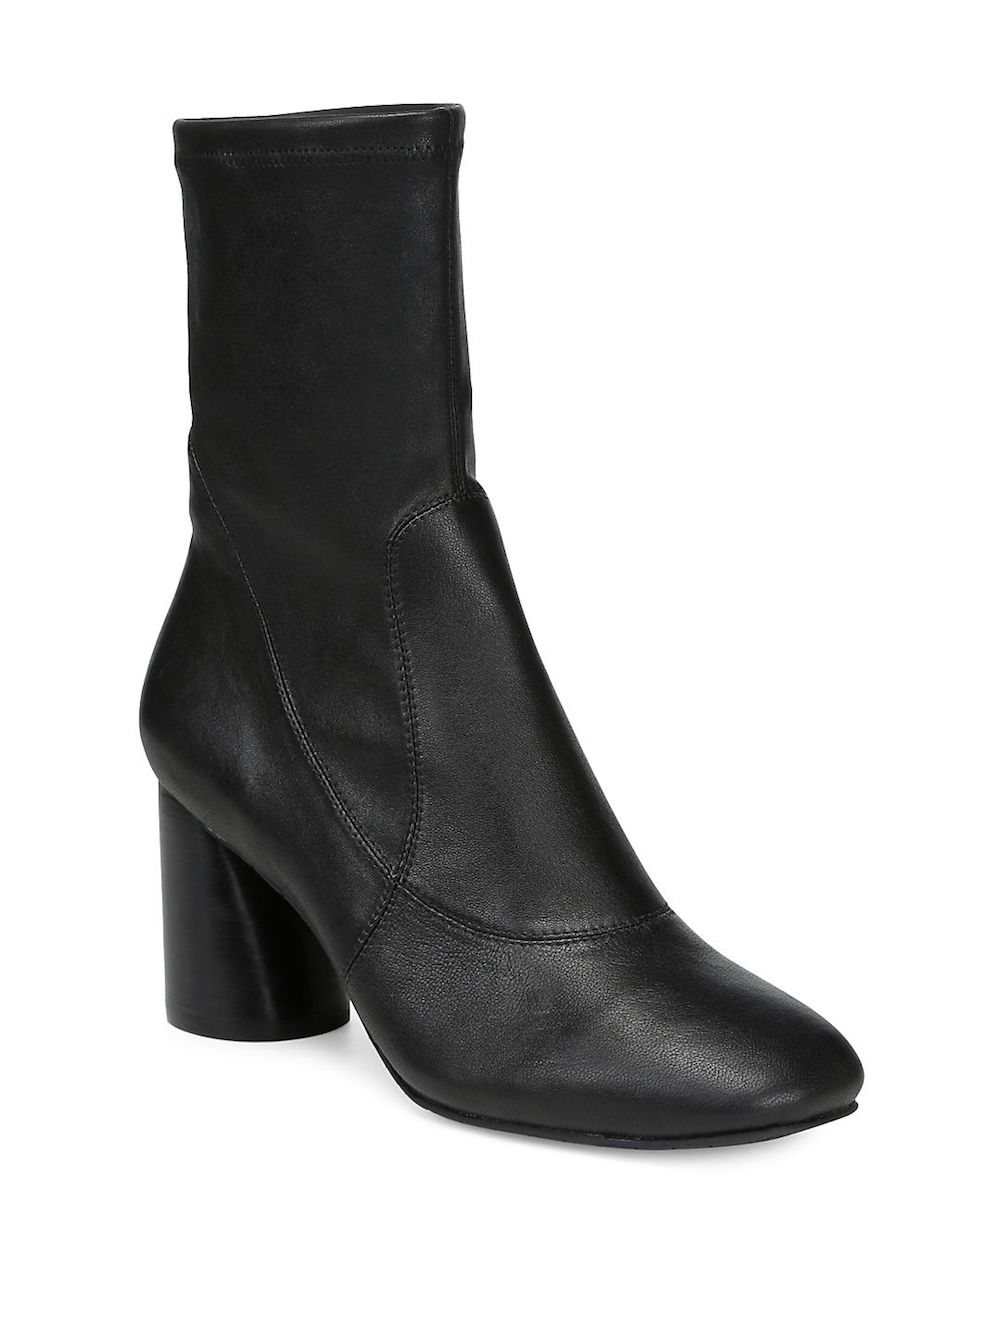 Donald J Pliner Womens Gisele2 Square Toe Ankle Fashion Boots, Black ...